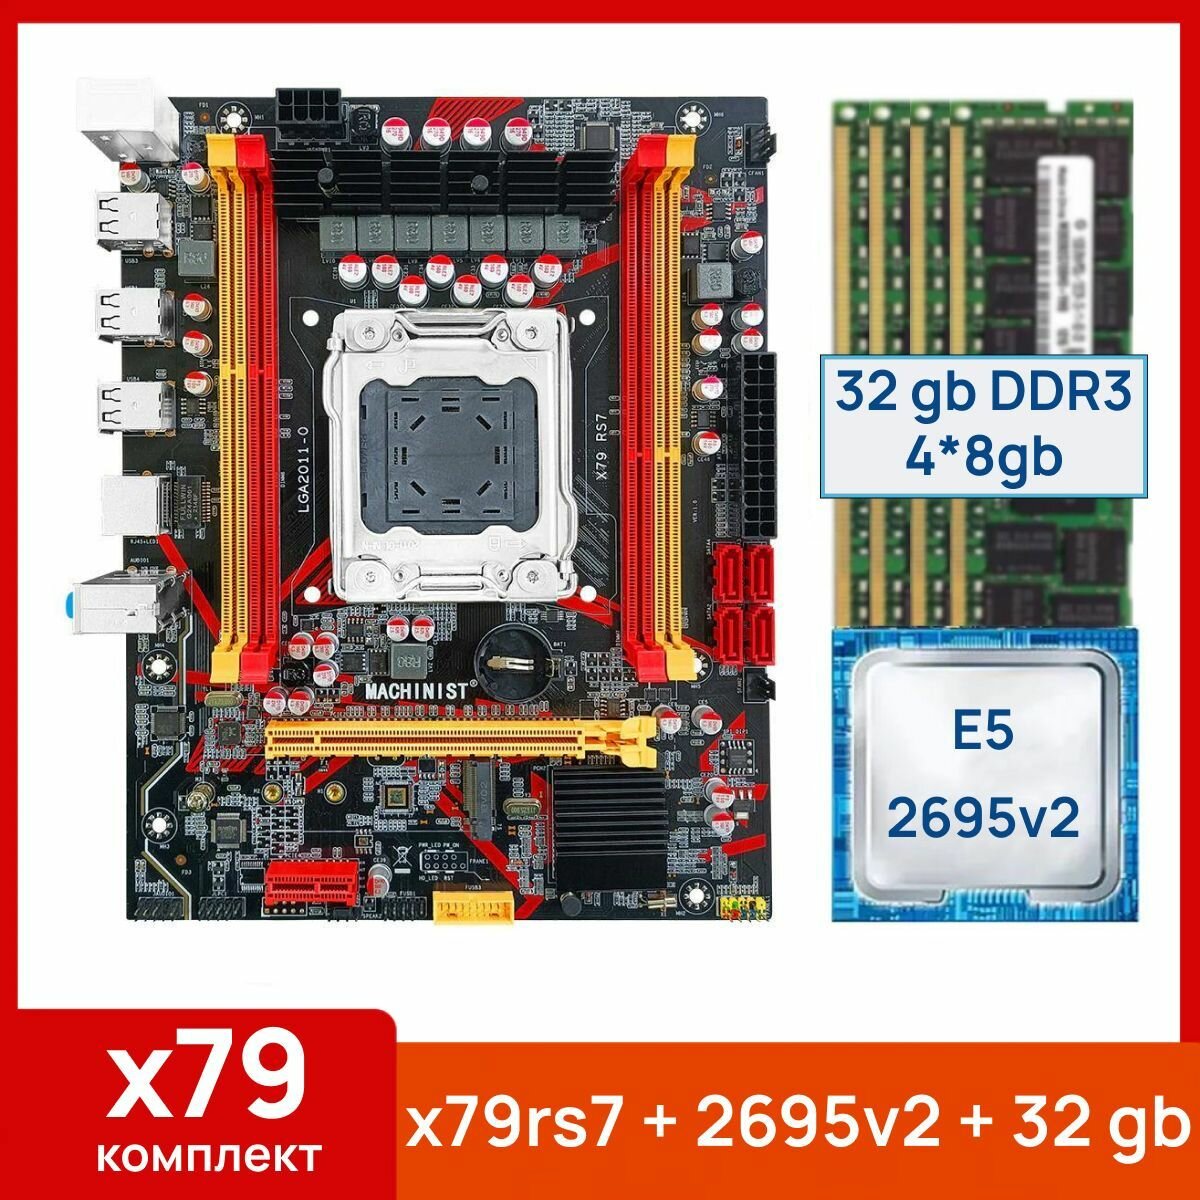 Комплект: Материнская плата Machinist RS-7 + Процессор Xeon E5 2695v2 + 32 gb(4x8gb) DDR3 серверная